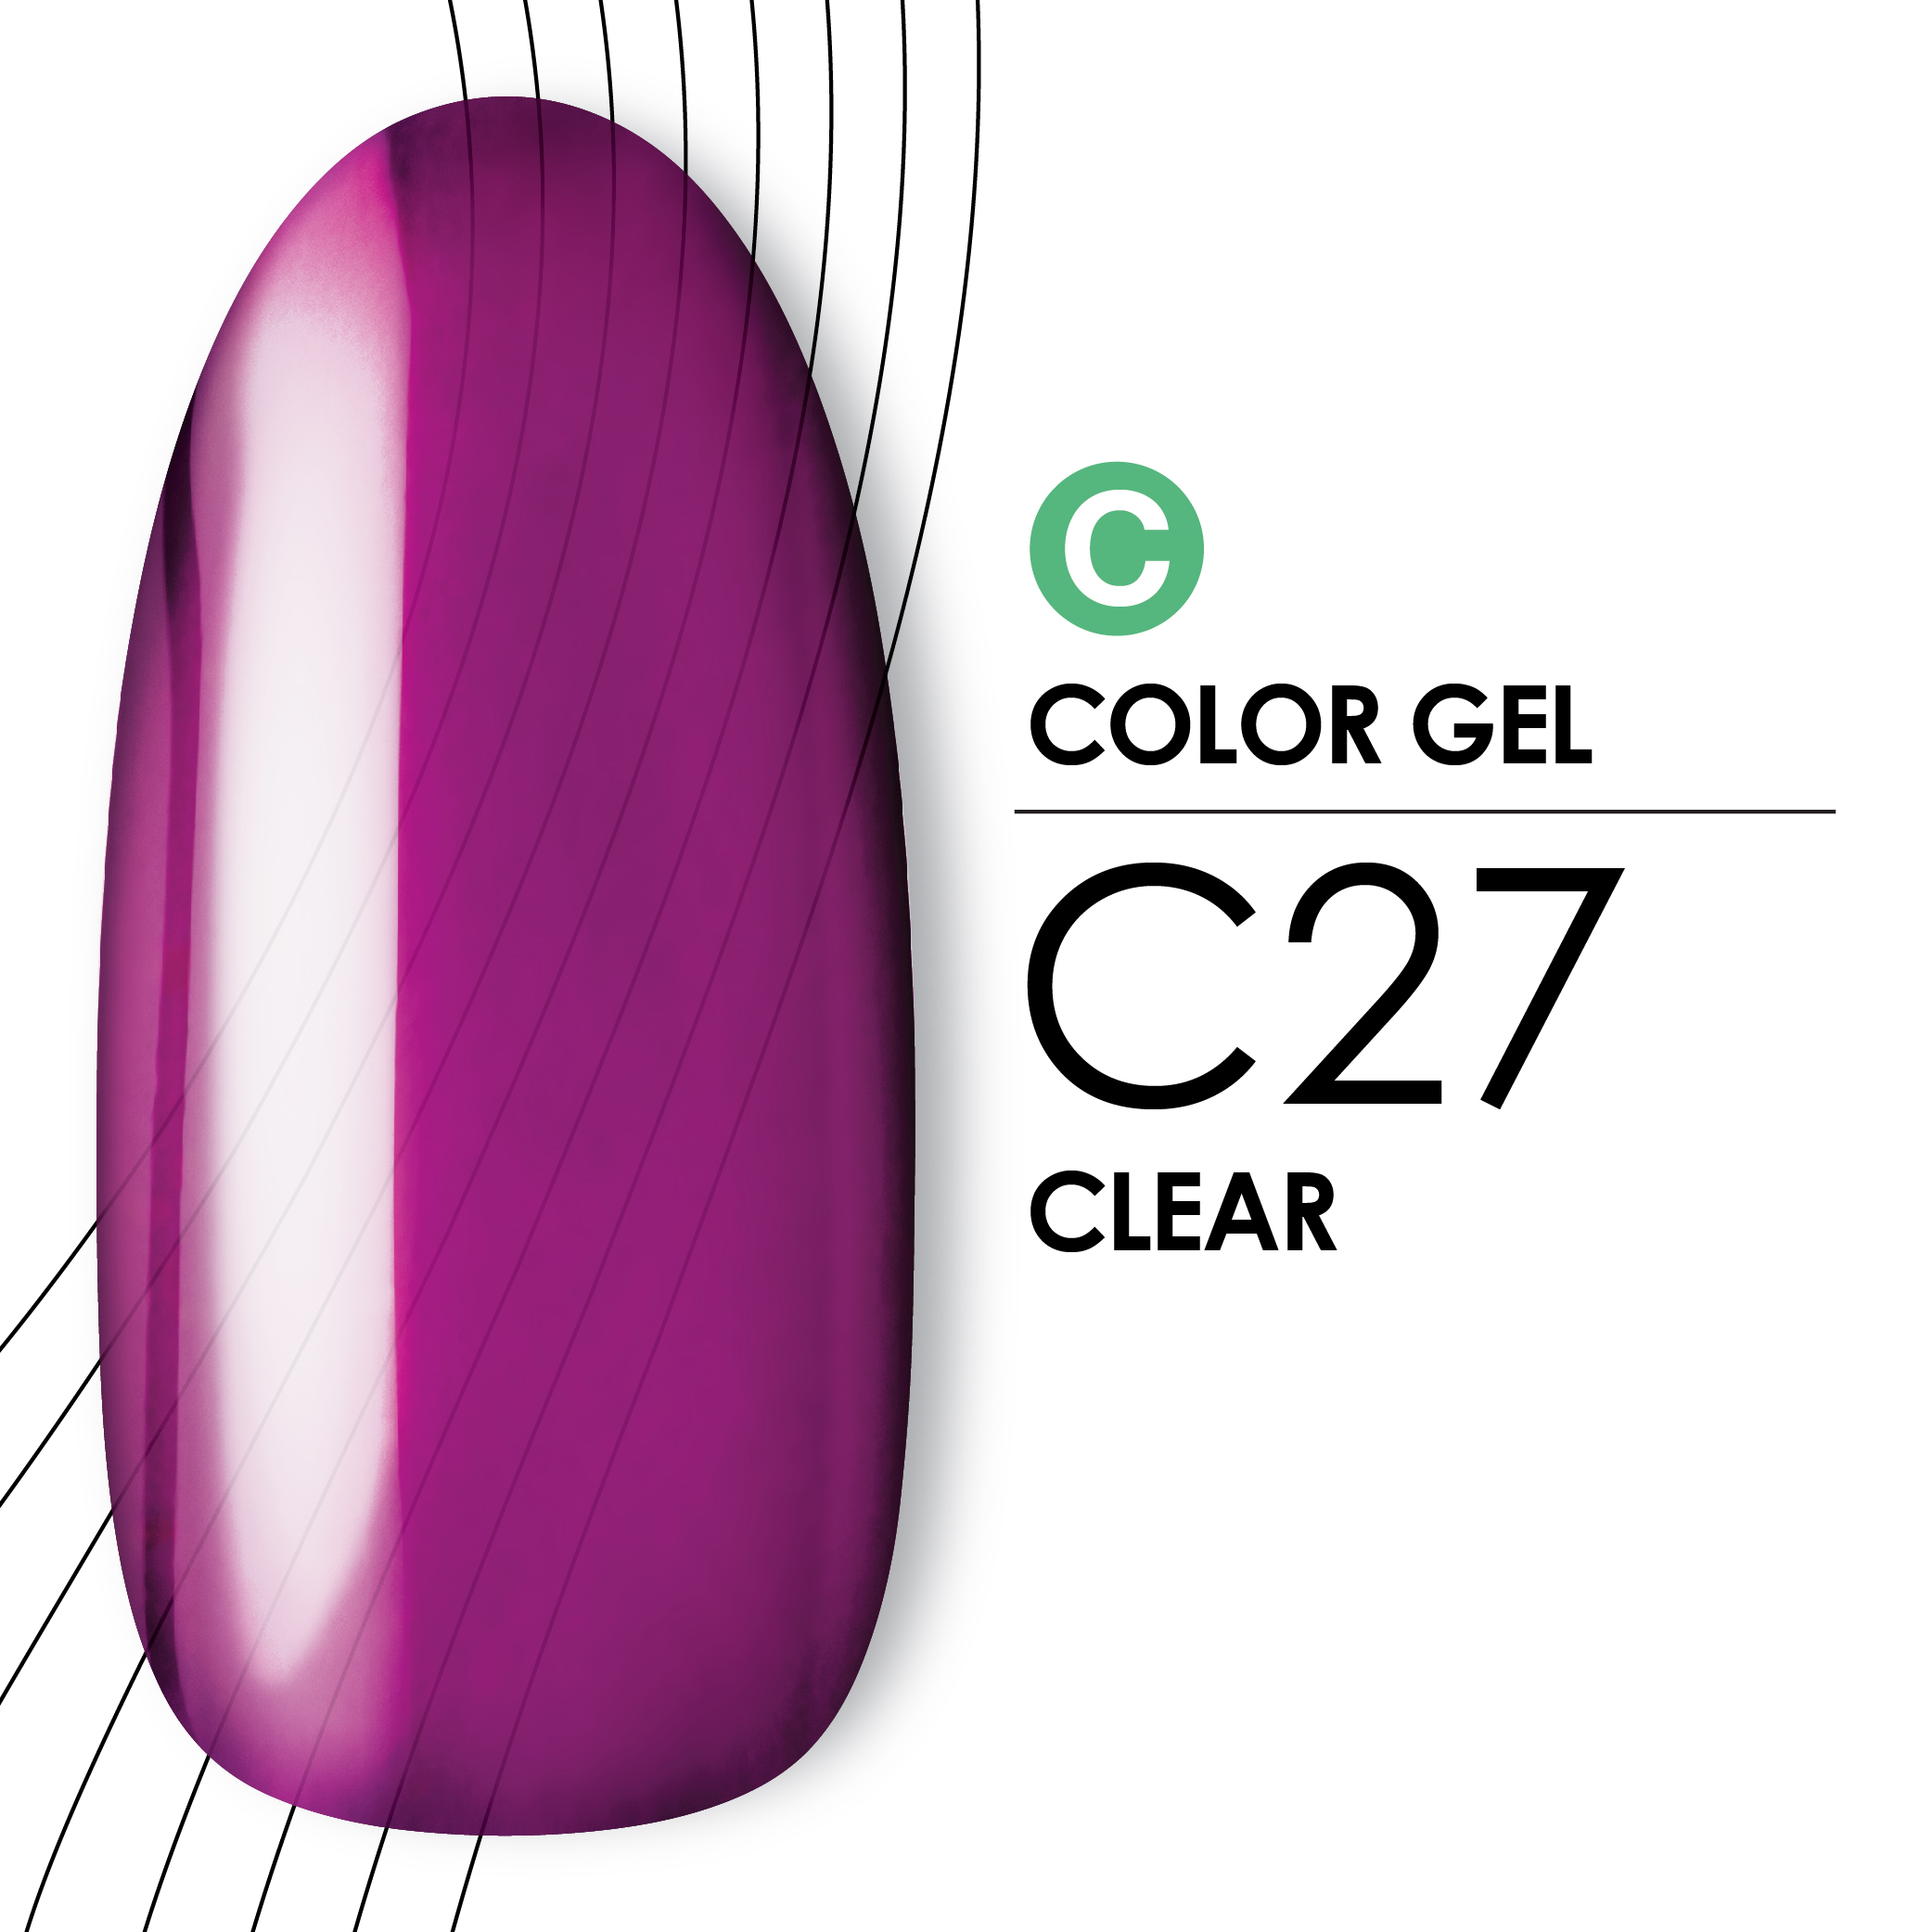 カラージェル C27 [4g]画像